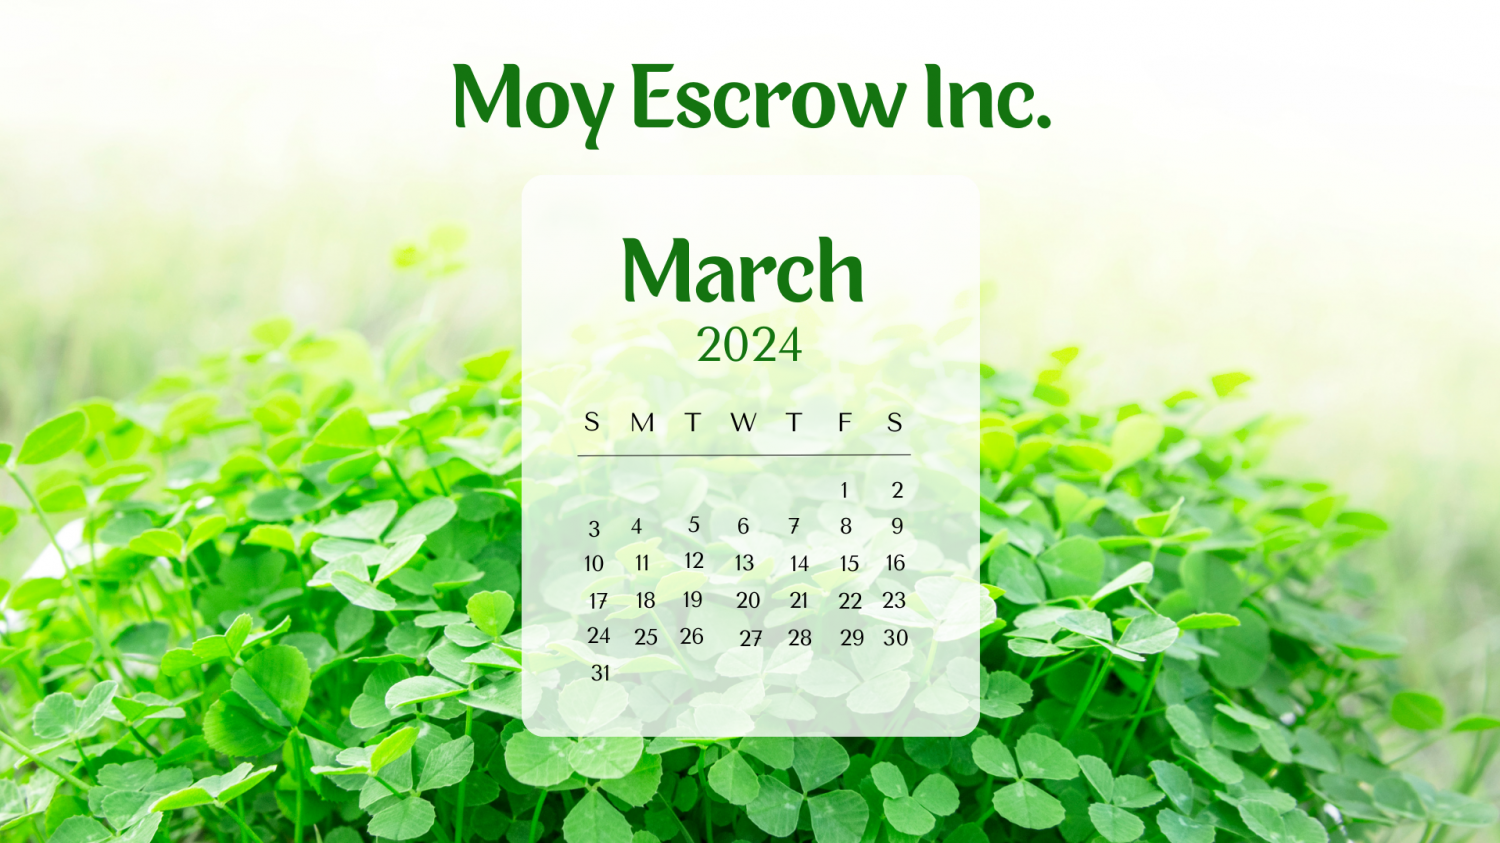 Moy Escrow Inc.